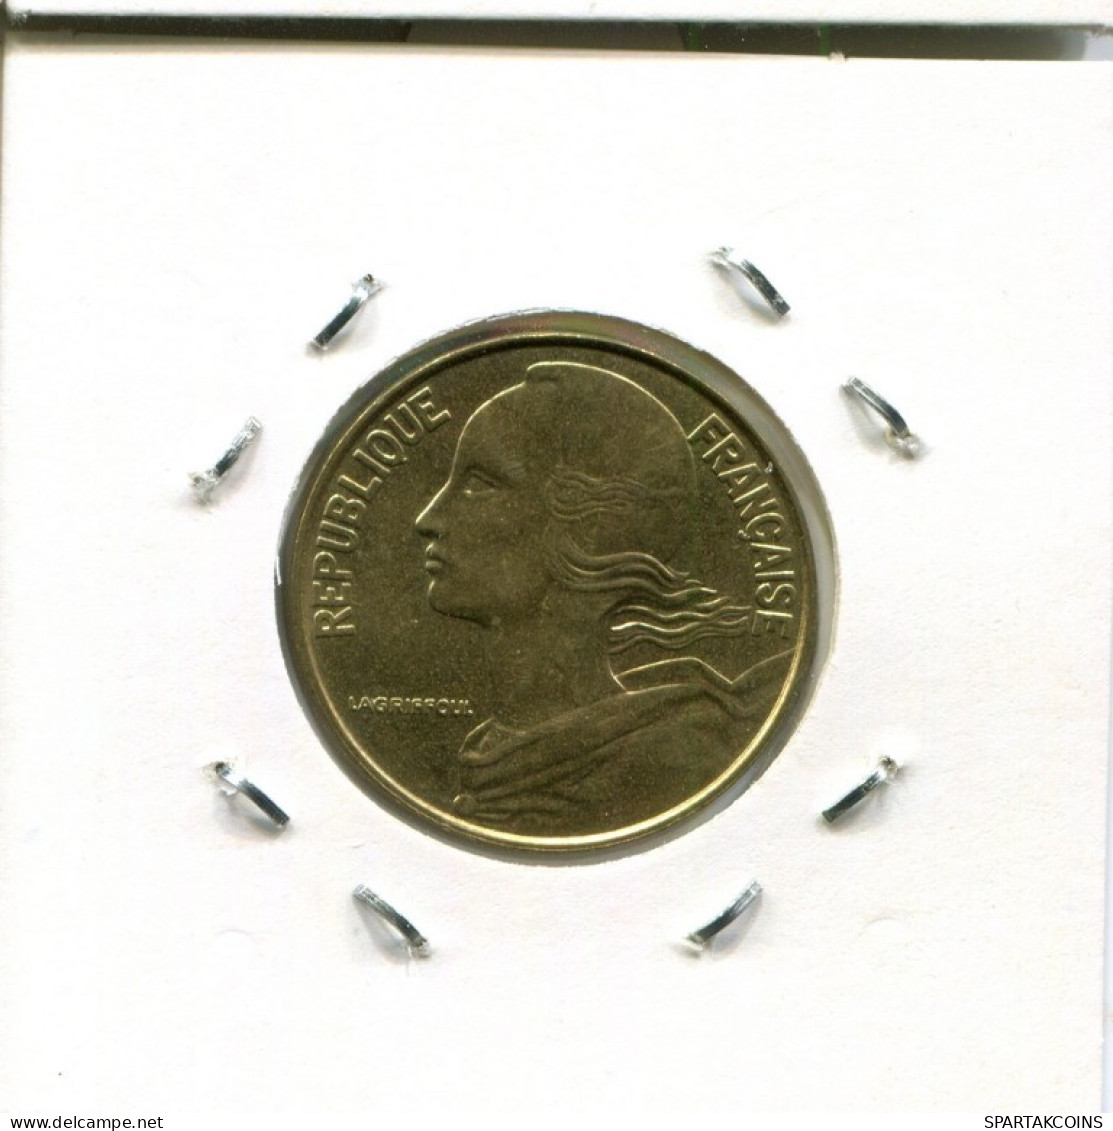 20 CENTIMES 1997 FRANCIA FRANCE Moneda #AM878.E.A - 20 Centimes